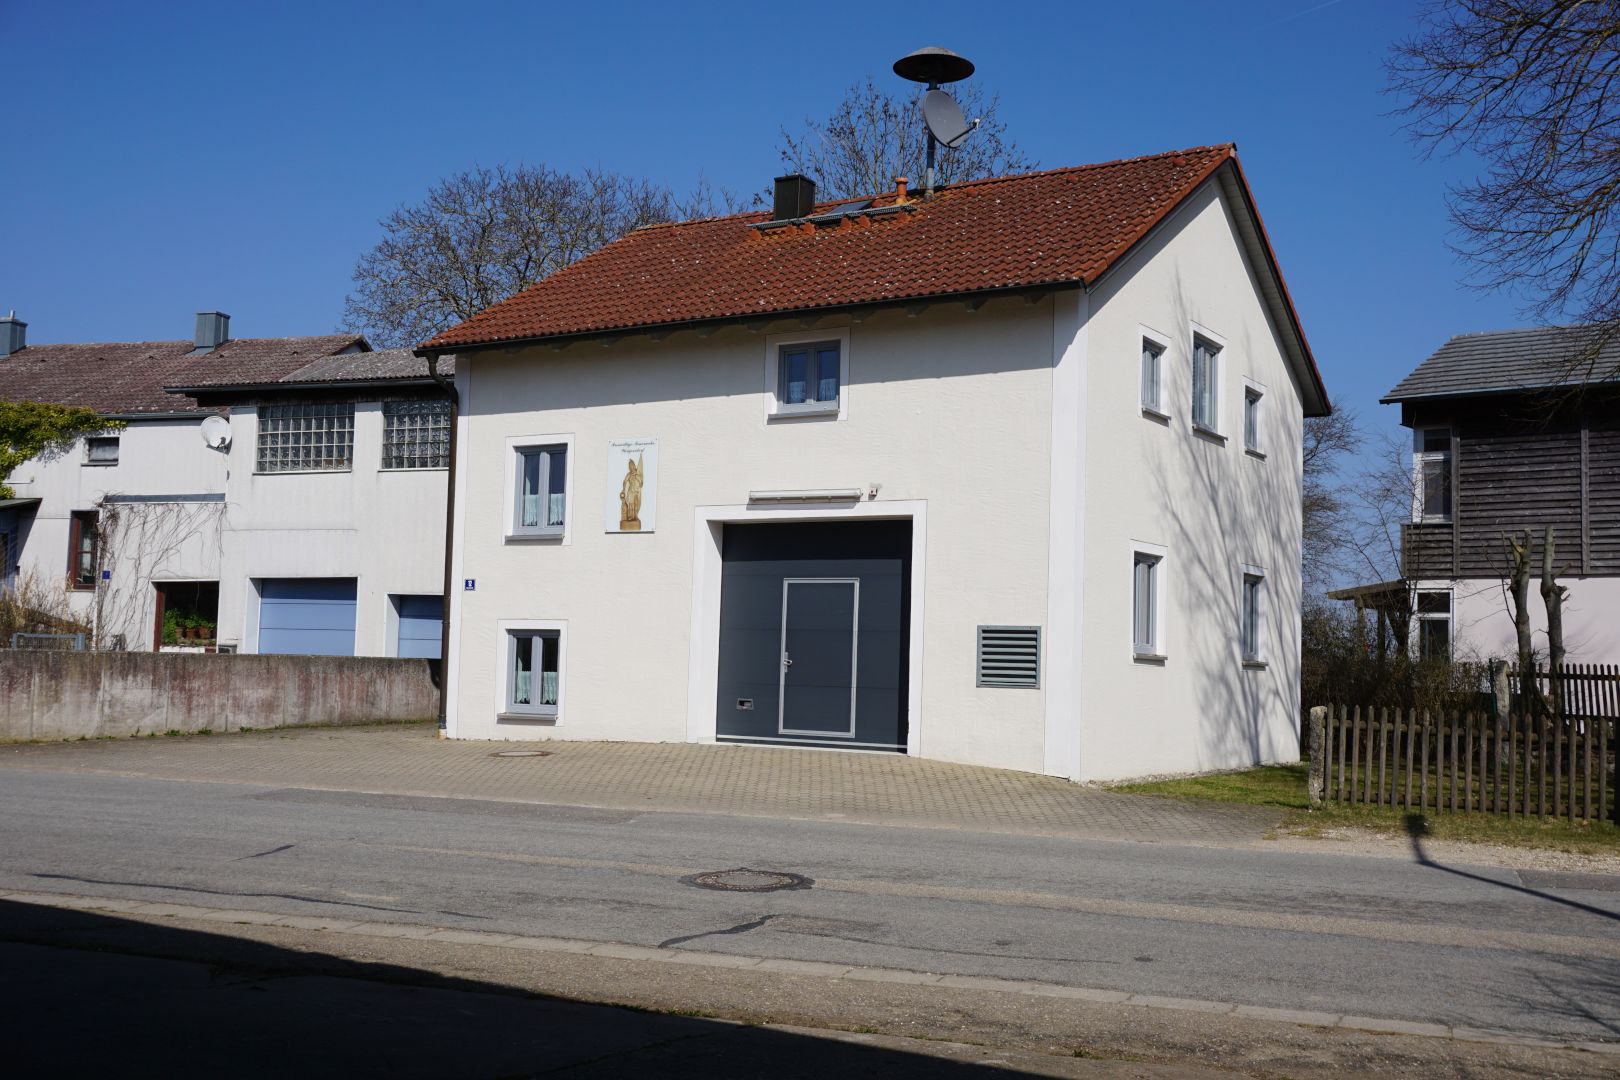 Gemeinschaftshaus und Ortsdurchfahrt Weigersdorf